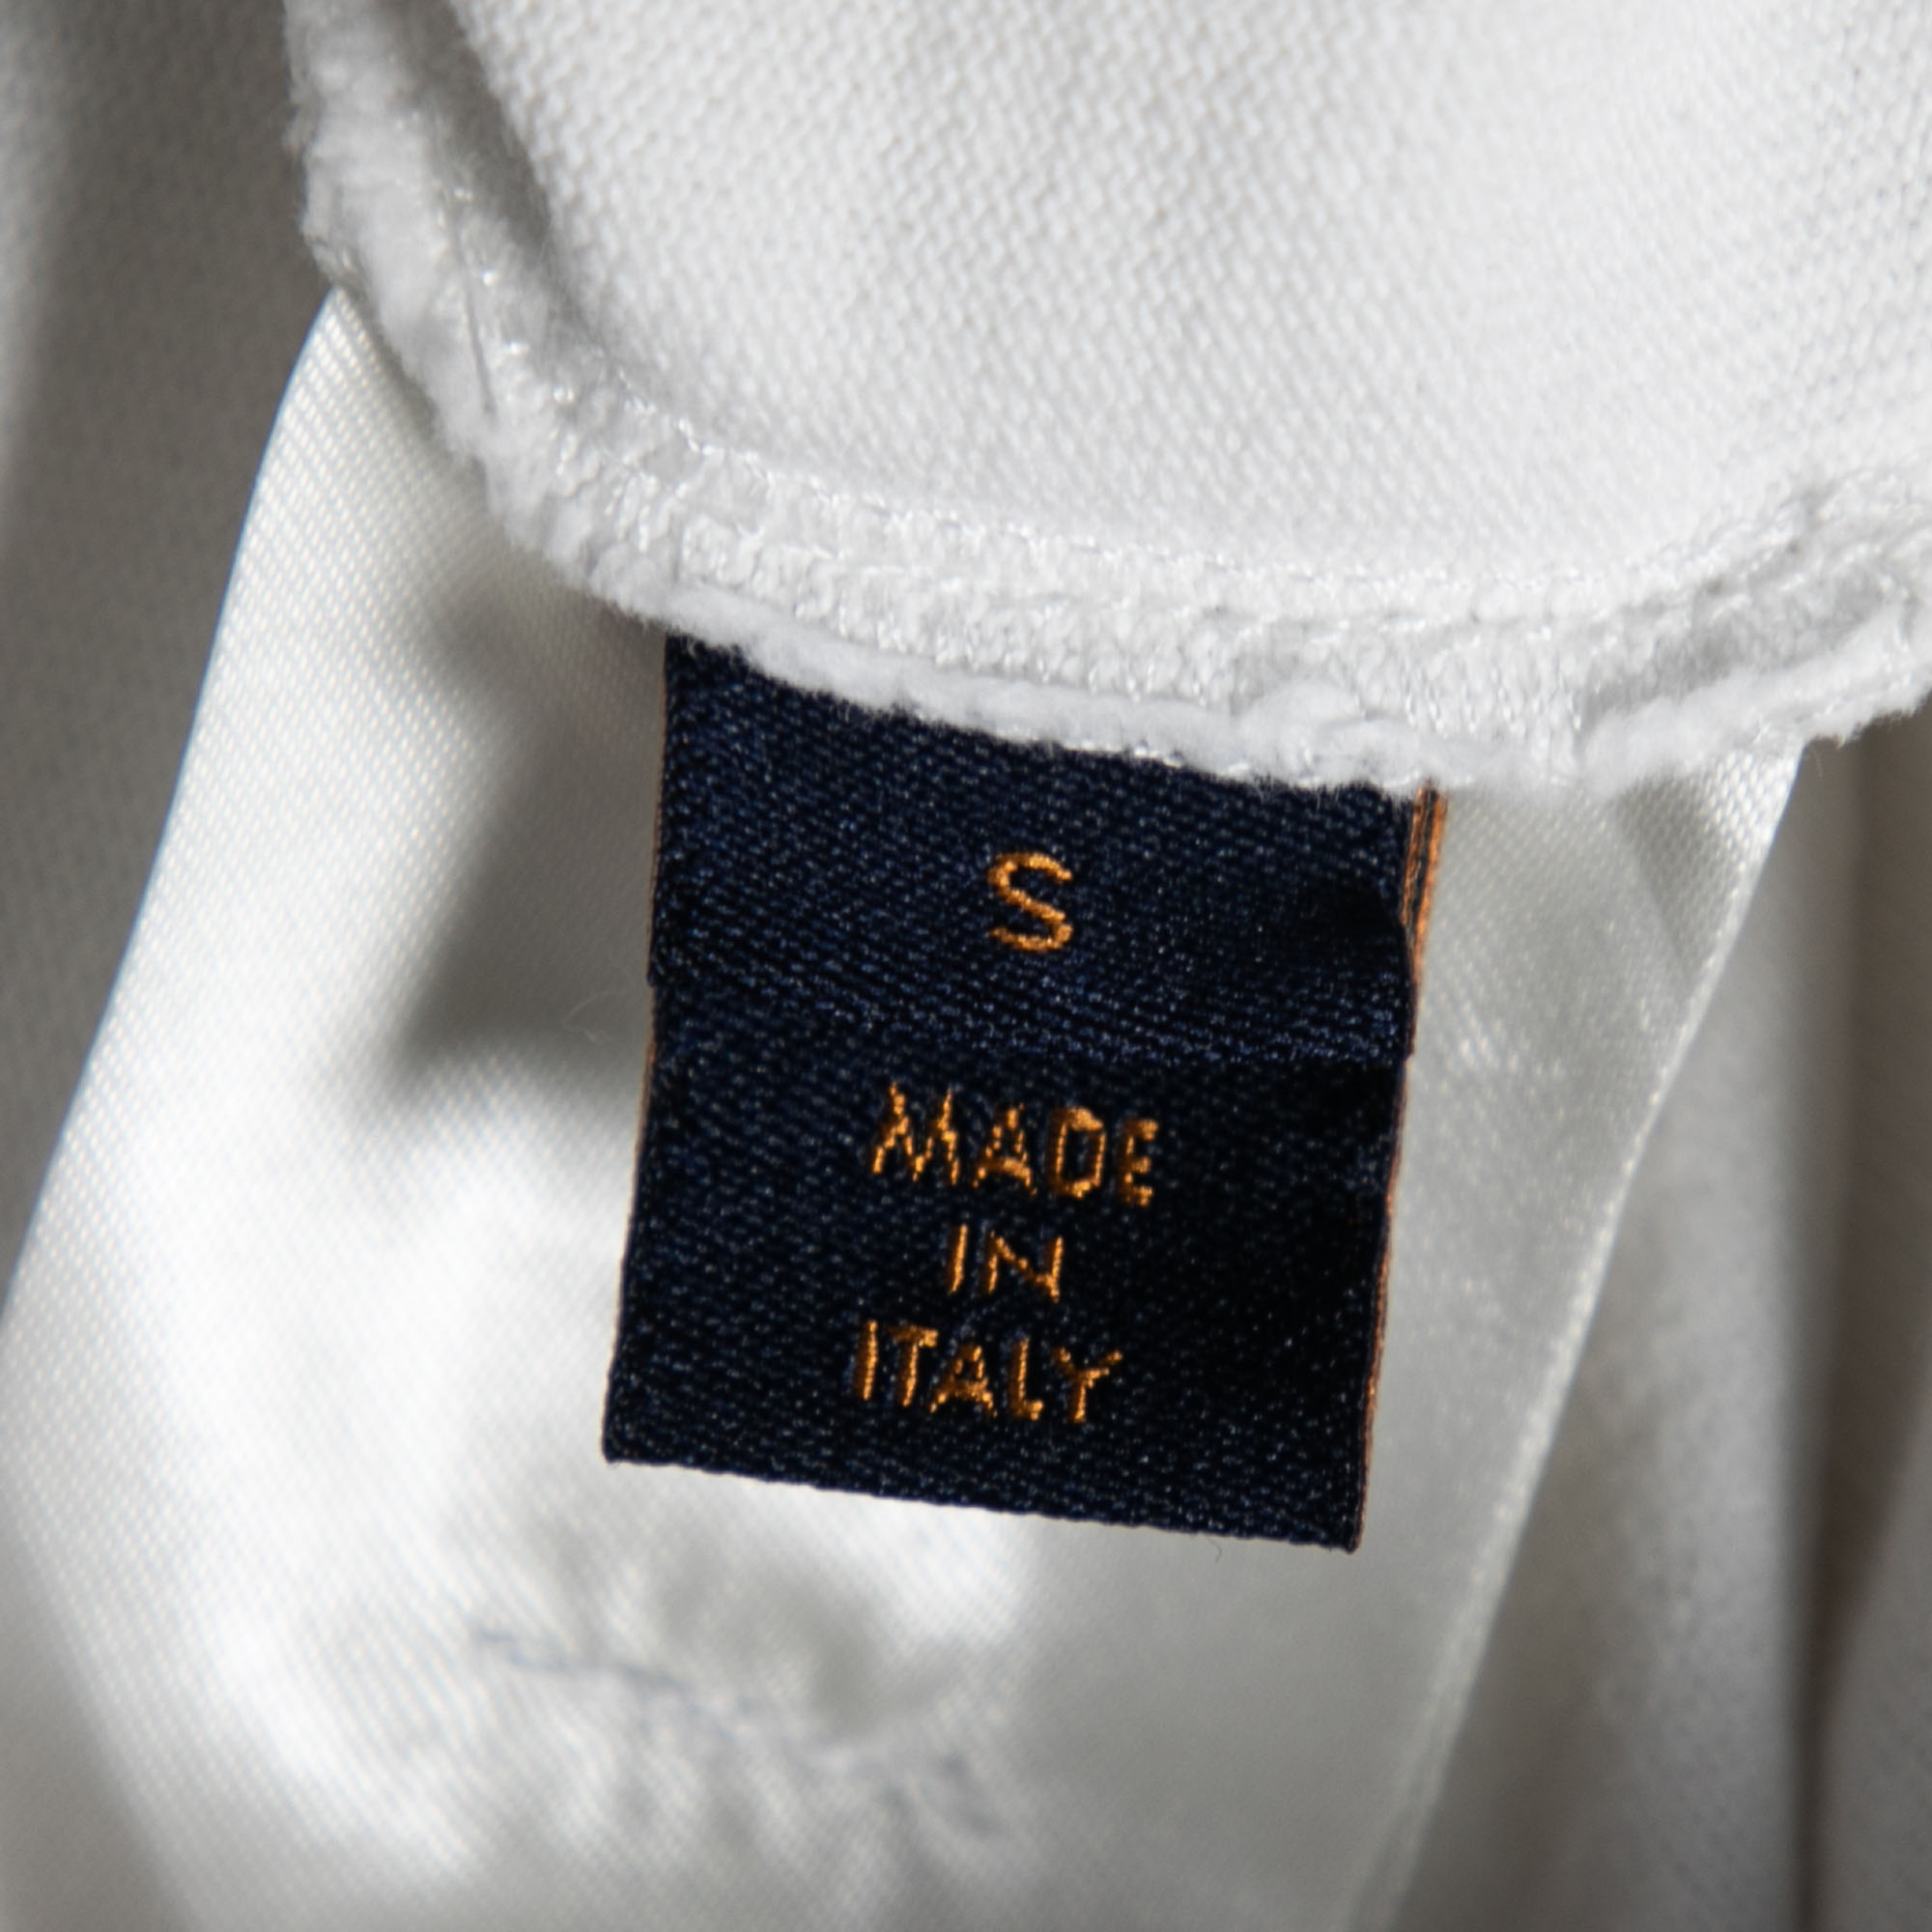 Louis Vuitton White Cotton Inside Out Long Sleeve Crew Neck T-Shirt S Louis  Vuitton | The Luxury Closet